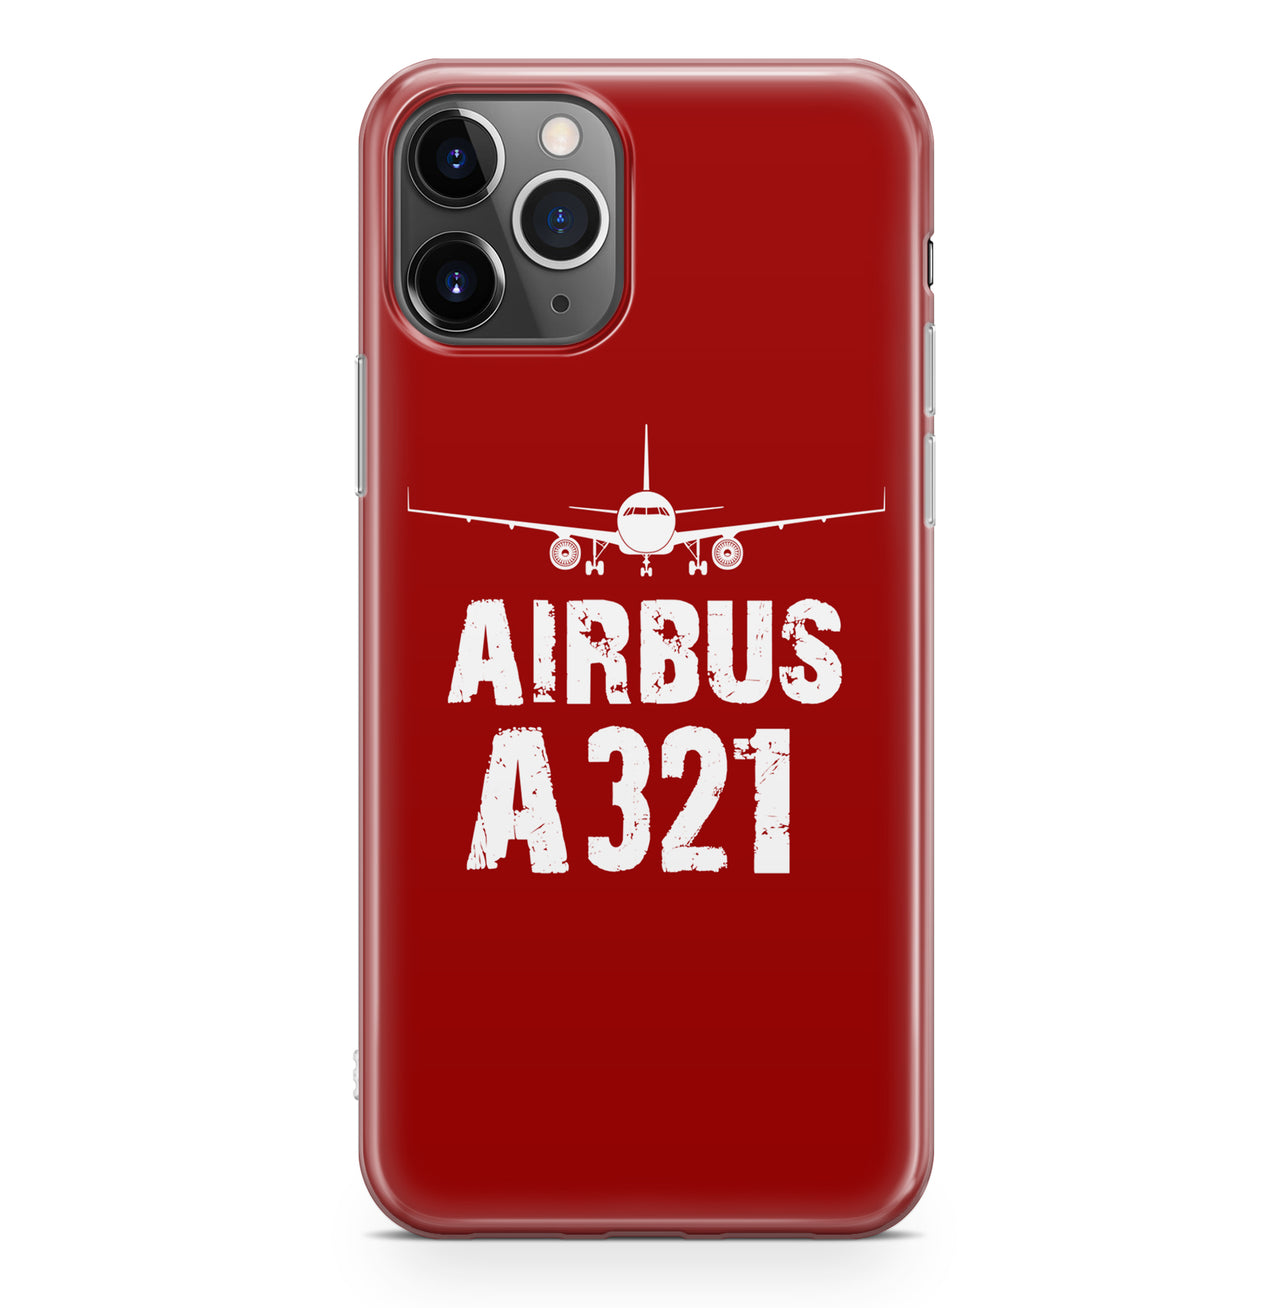 Airbus A321 & Plane Designed iPhone Cases